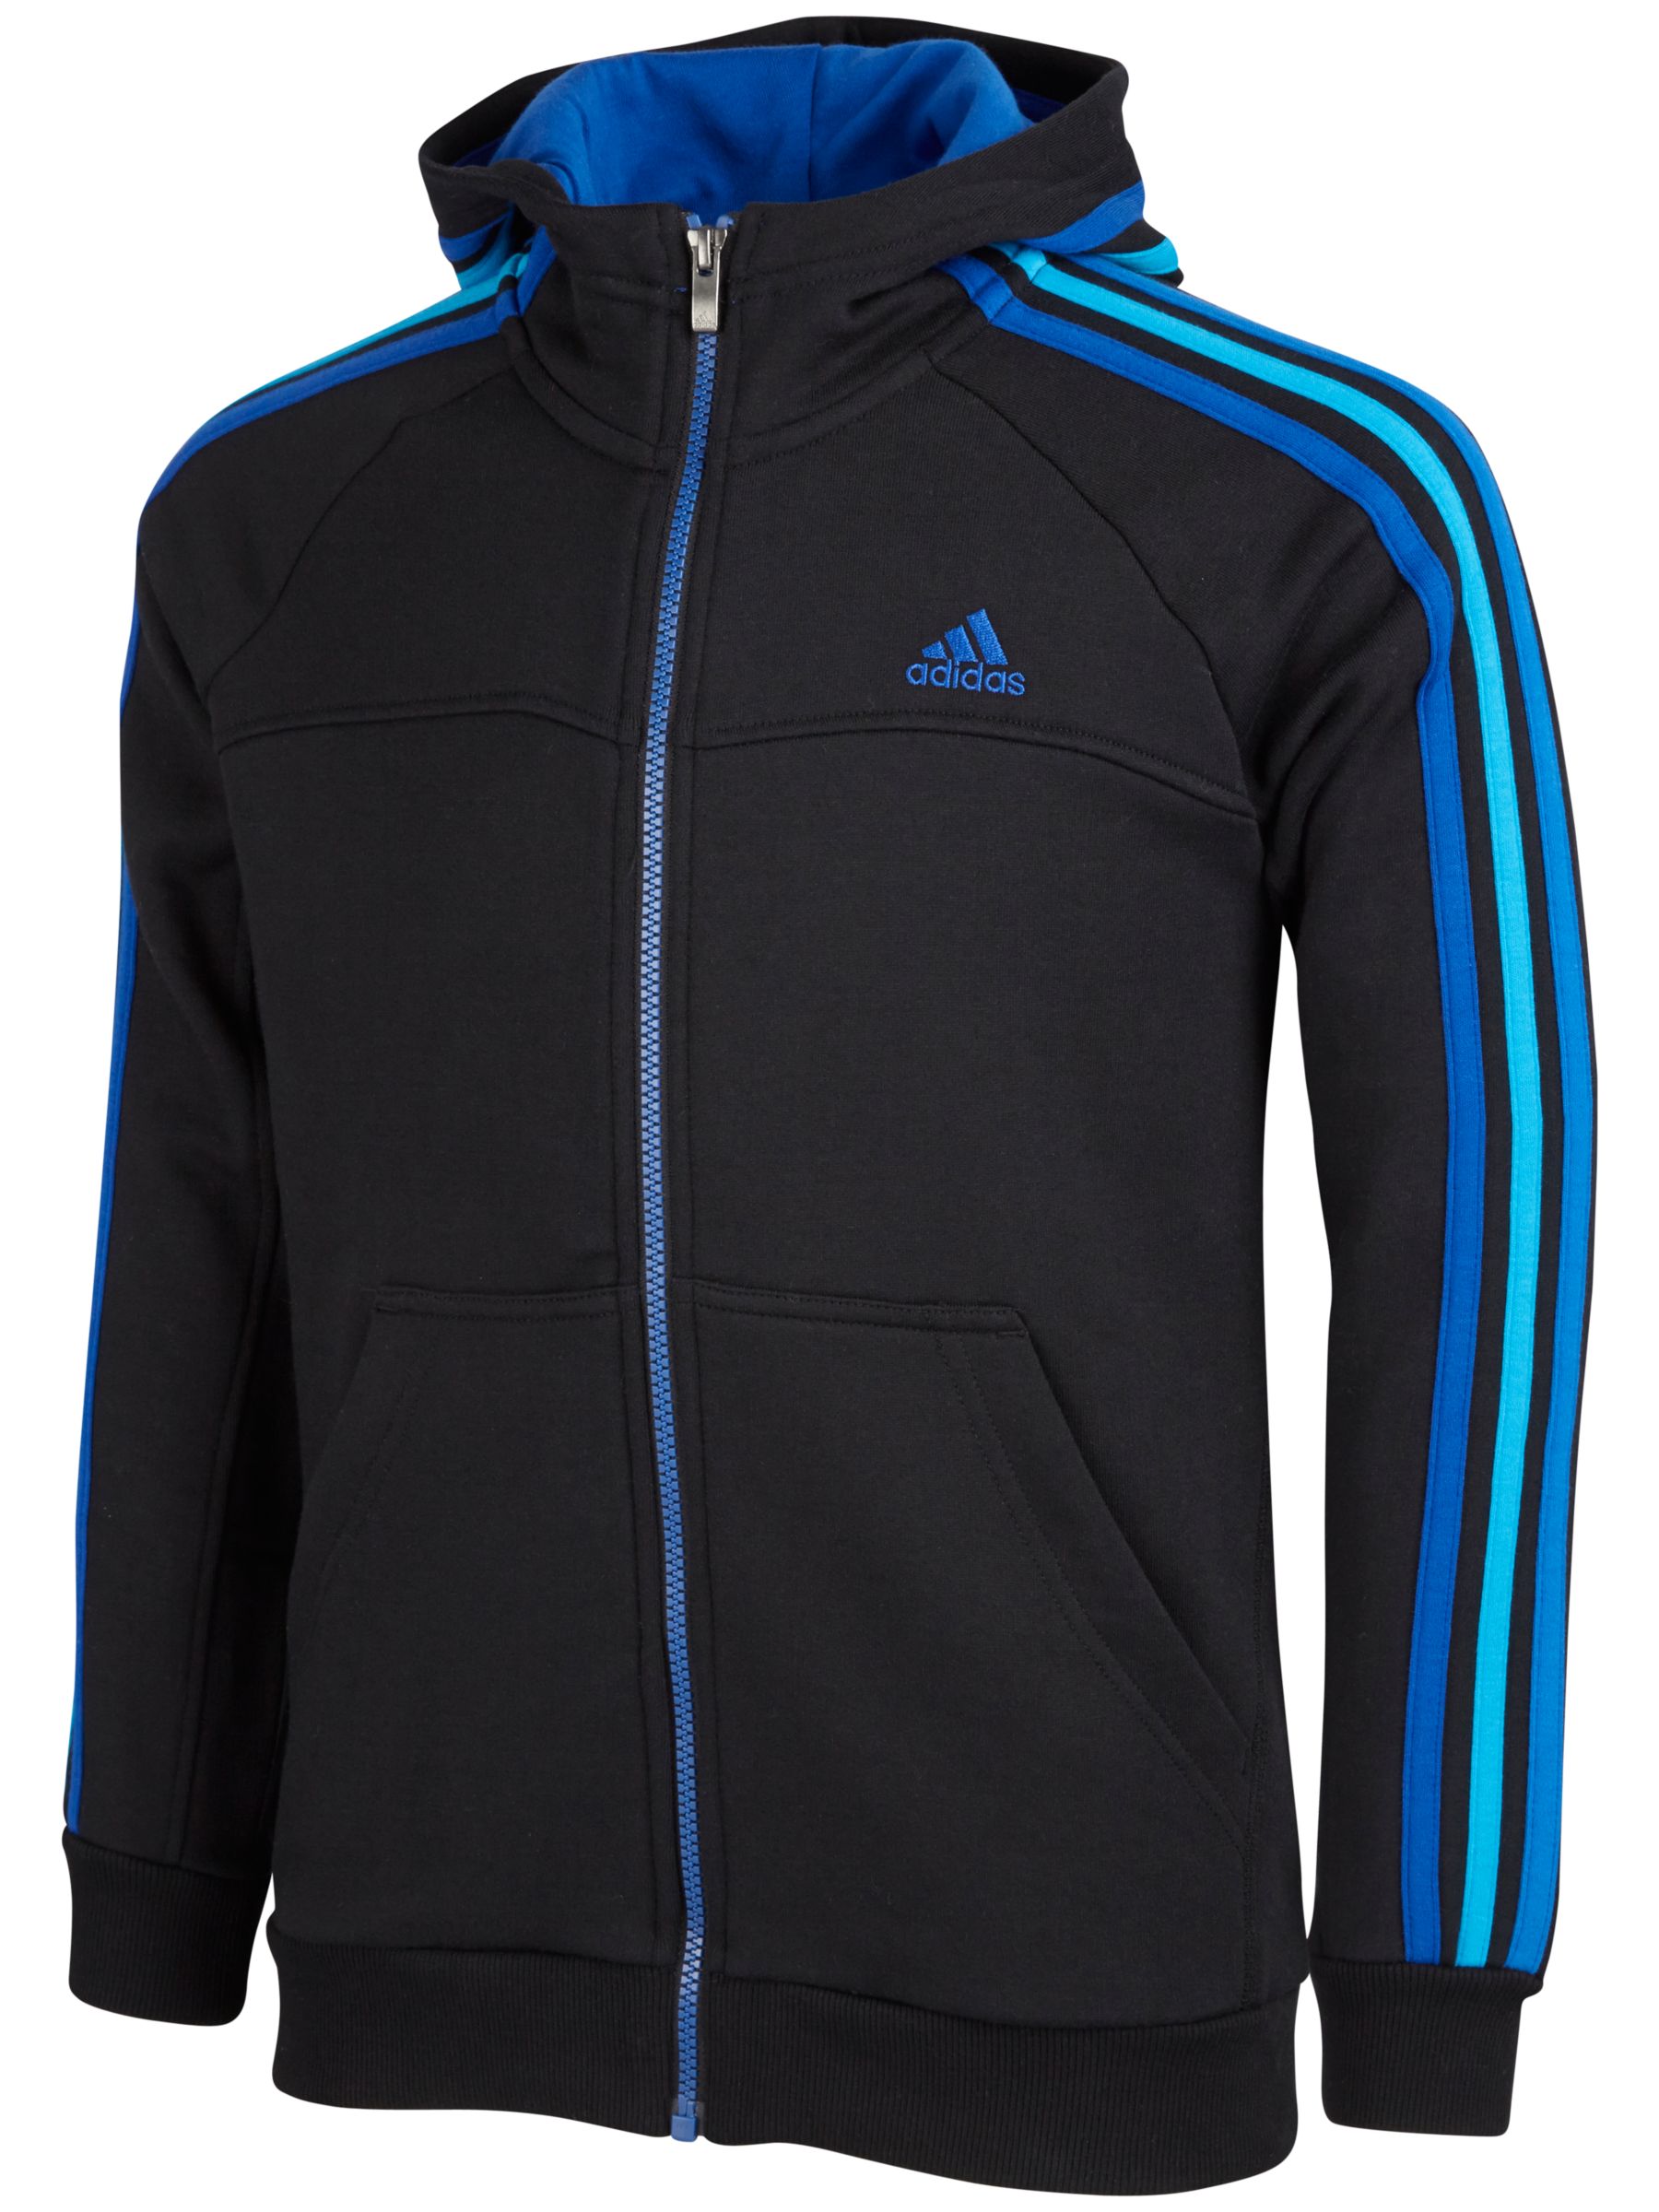 blue and black adidas hoodie